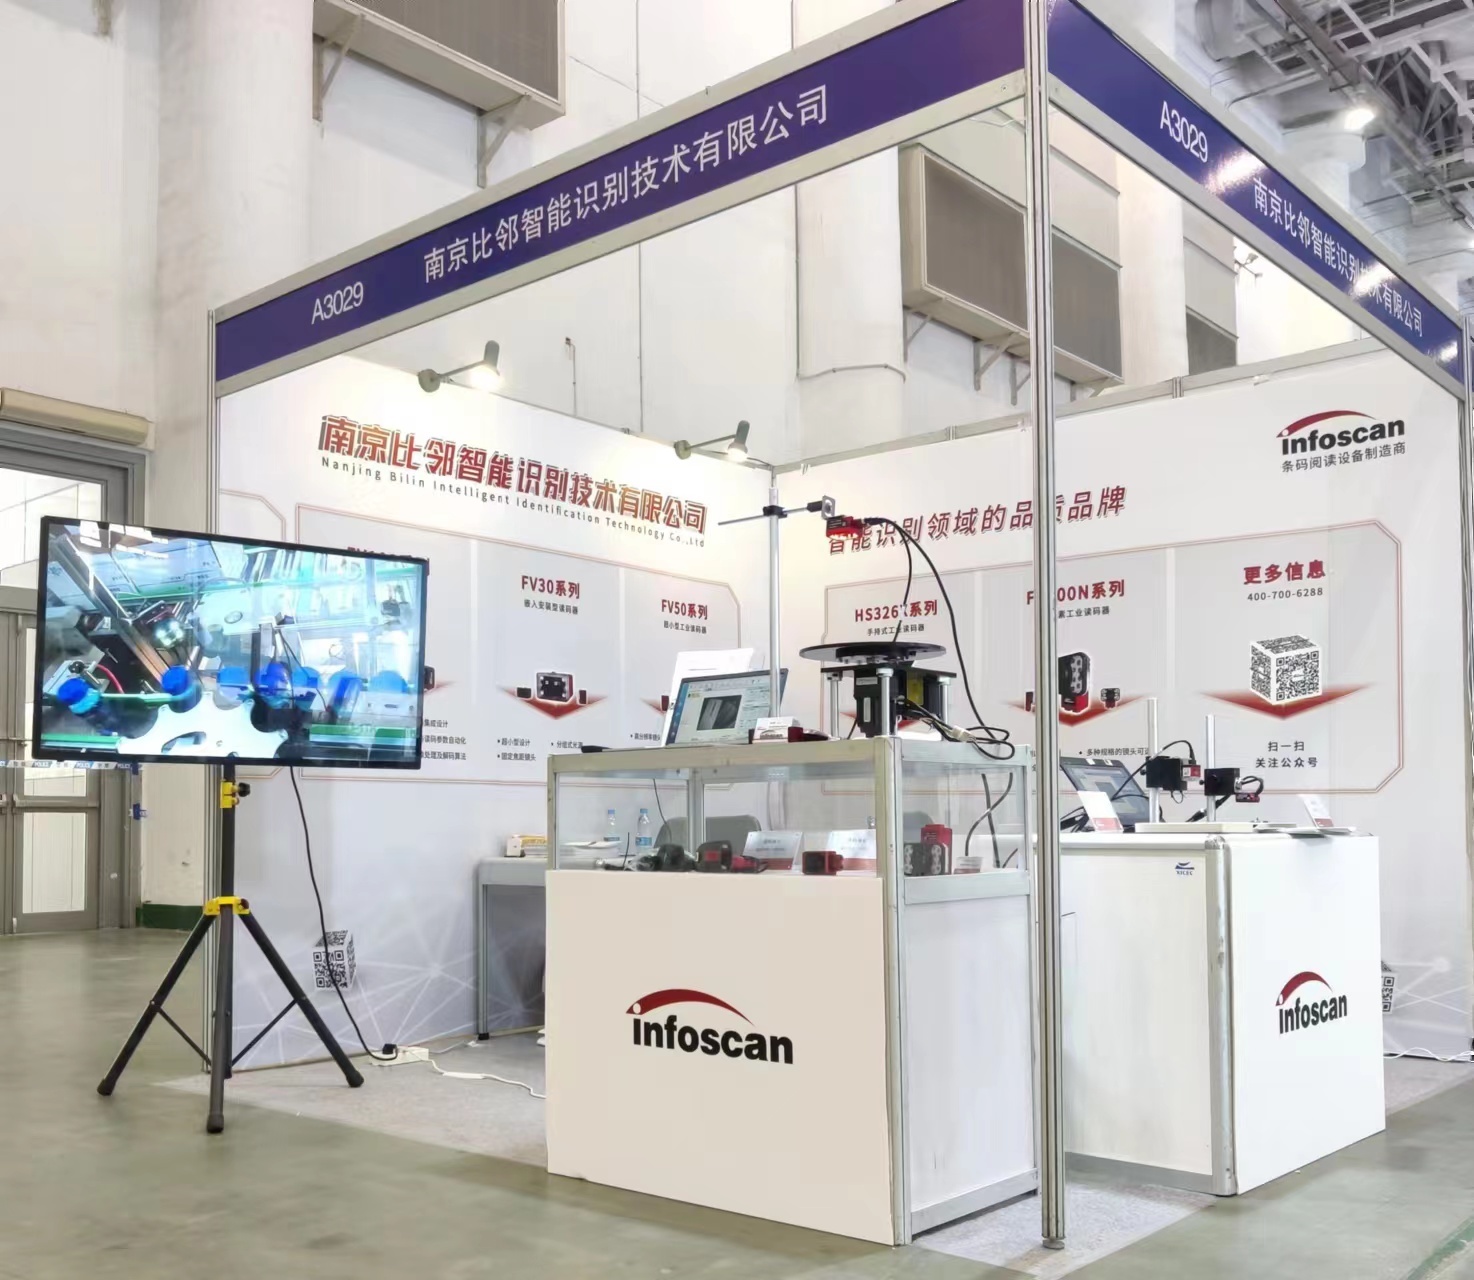 2022 Xiamen Industrial Expo Is In Progress